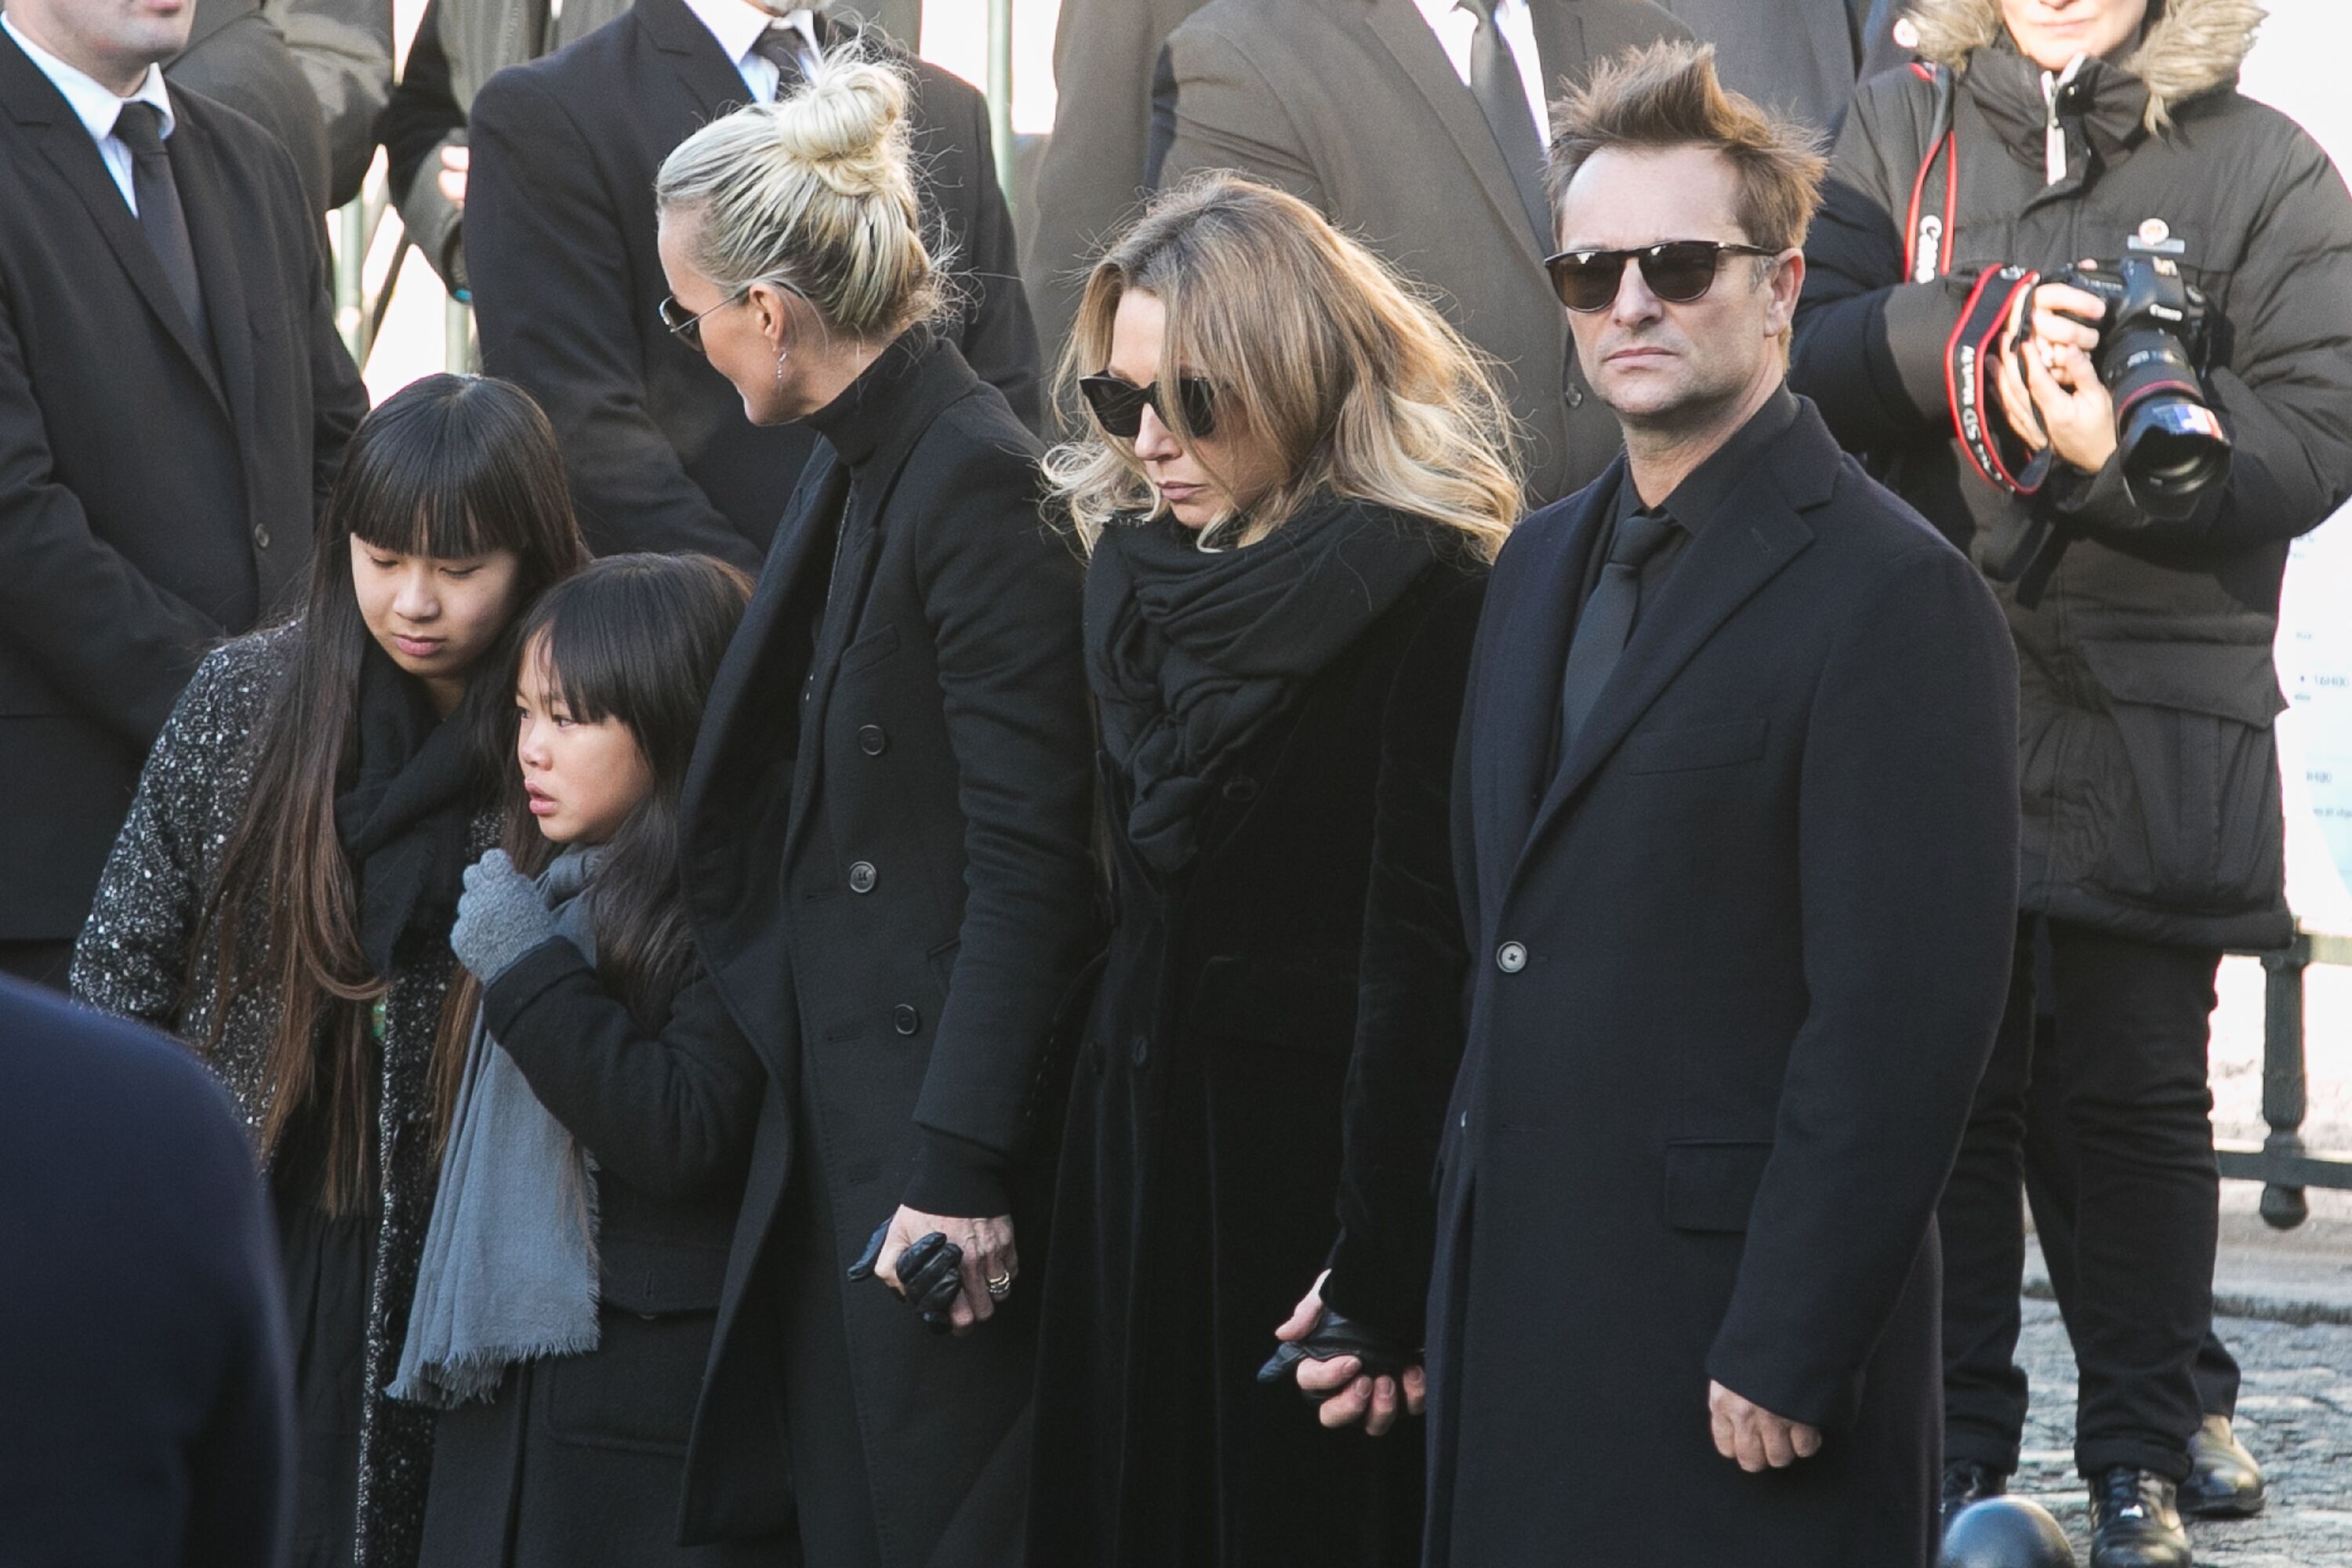 Jade Hallyday, Joy Hallyday, Laeticia Hallyday, Laura Smet et David Hallyday sont vus lors des funérailles de Johnny Hallyday à l'église De La Madeleine à Paris, France. | Photo : Getty Images